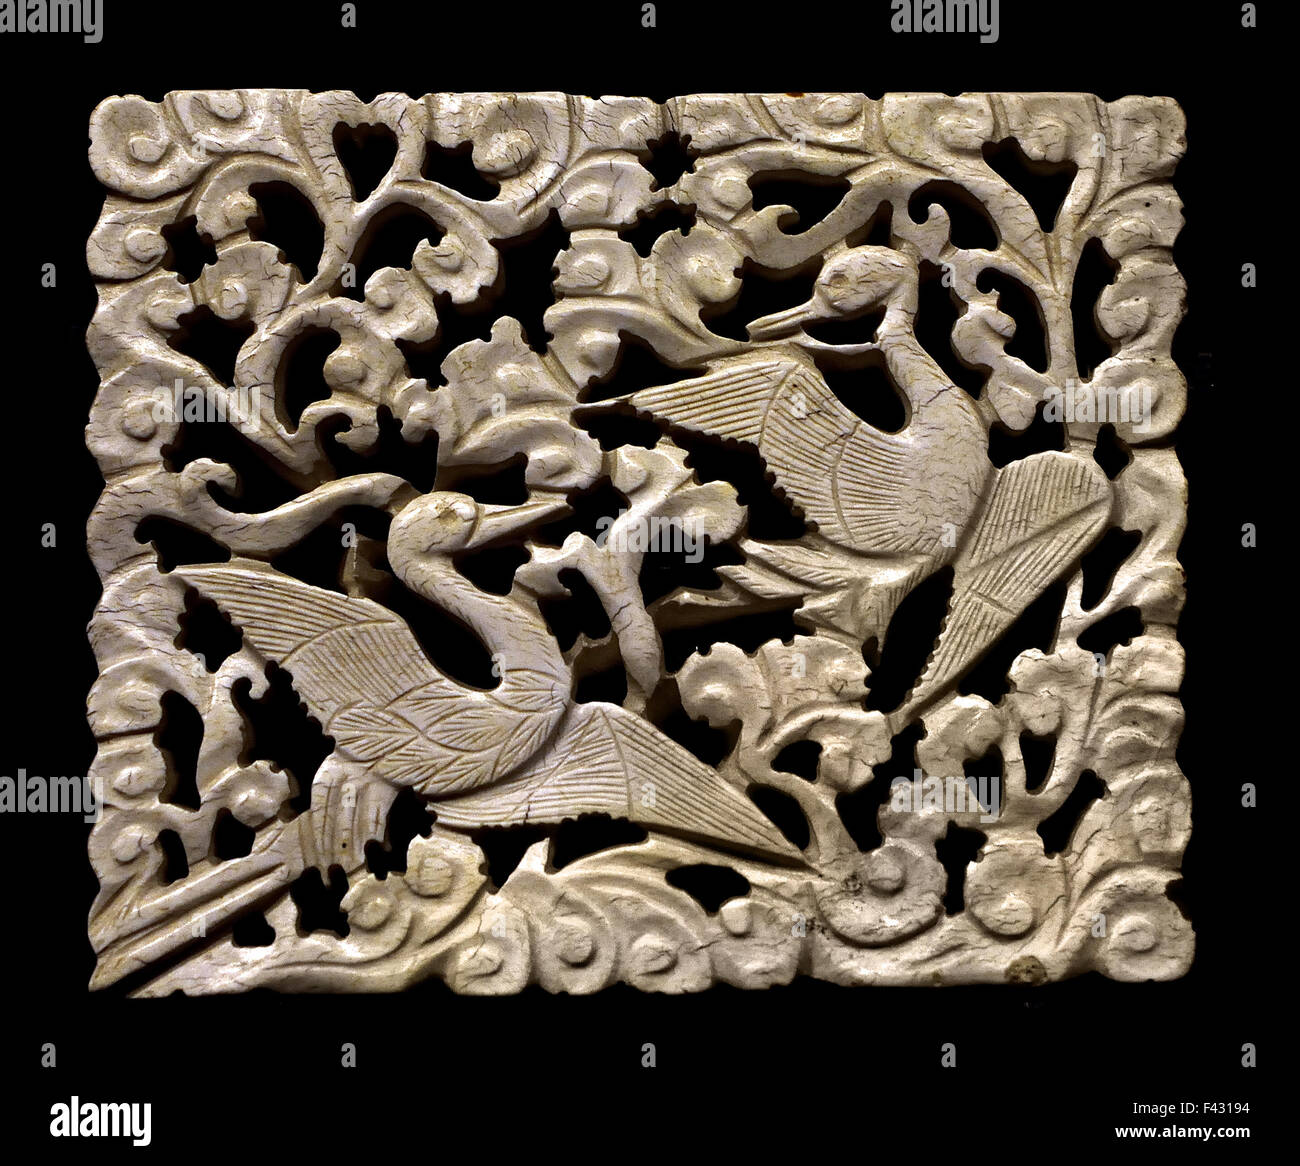 Ornement ivoire avec cloud et la conception de la grue Dynastie Song (960 - 1279 ) Musée de Shanghai de l'ancien art chinois Chine Banque D'Images